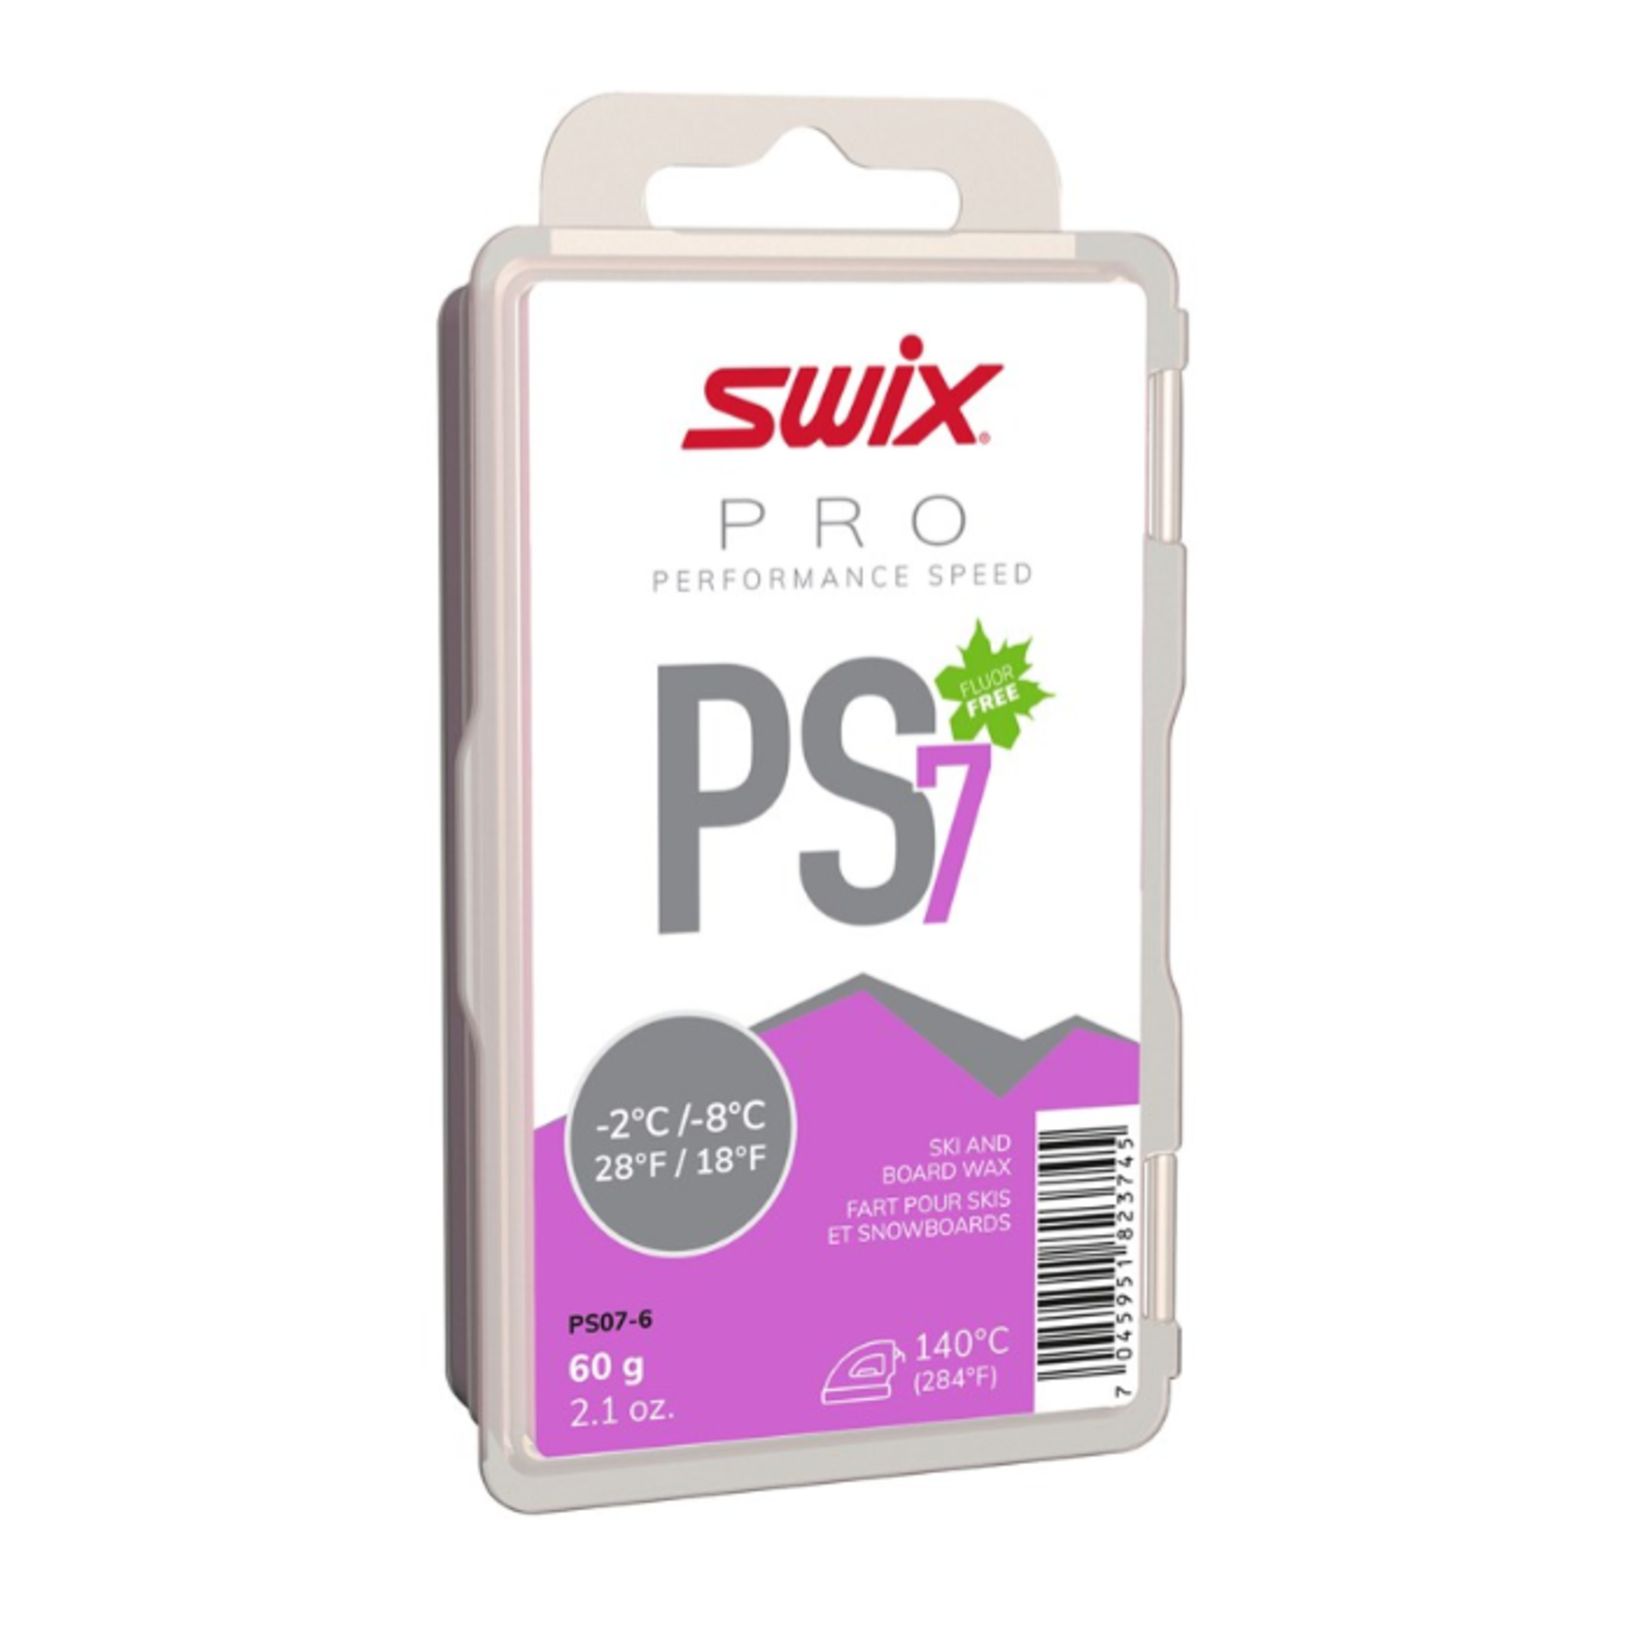 Swix Swix PS7 Violet, -2°C/-8°C, 60g